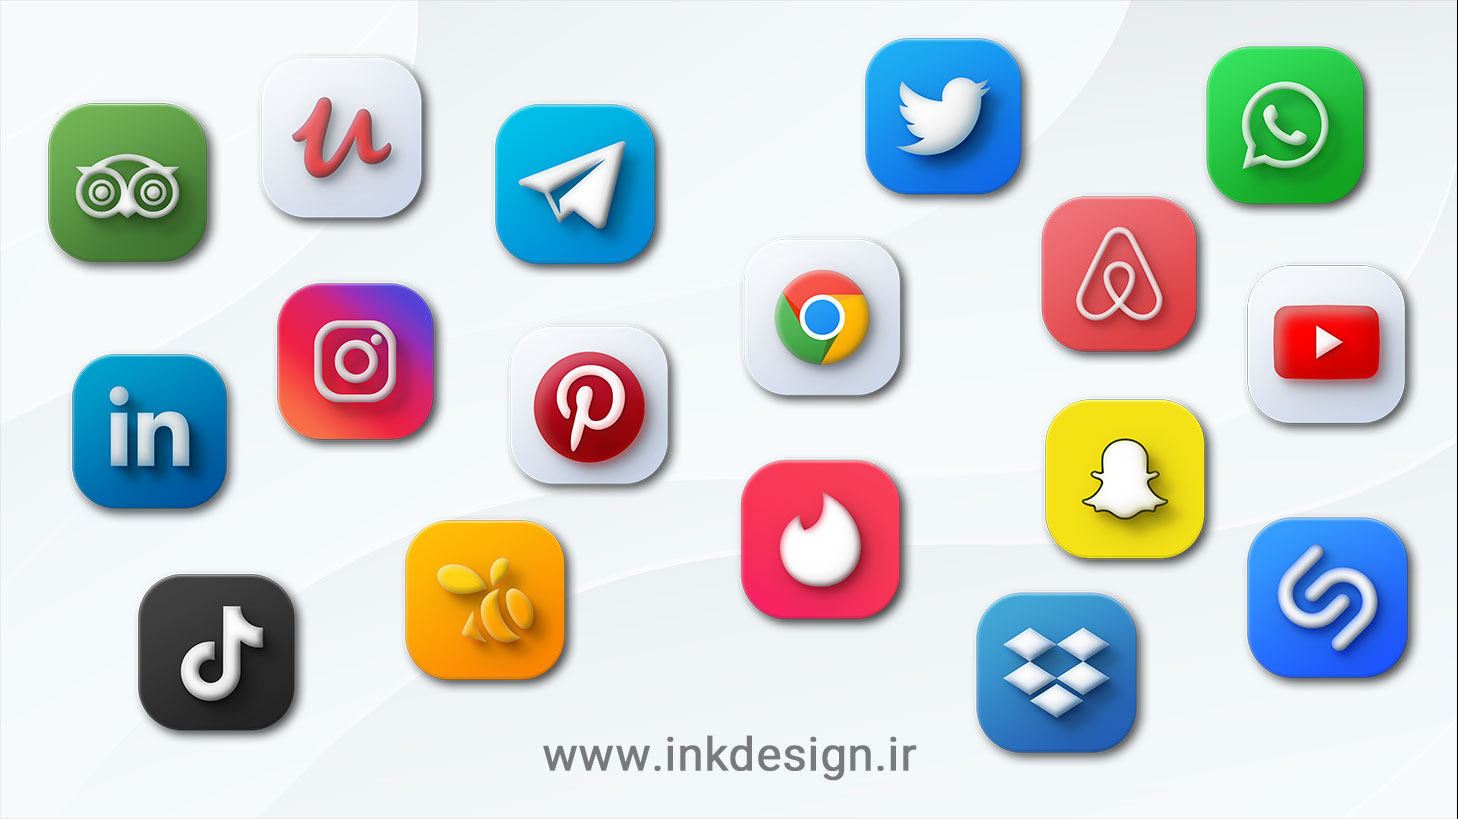 ایکون مک شبکه های اجتماعی - MacOS icons